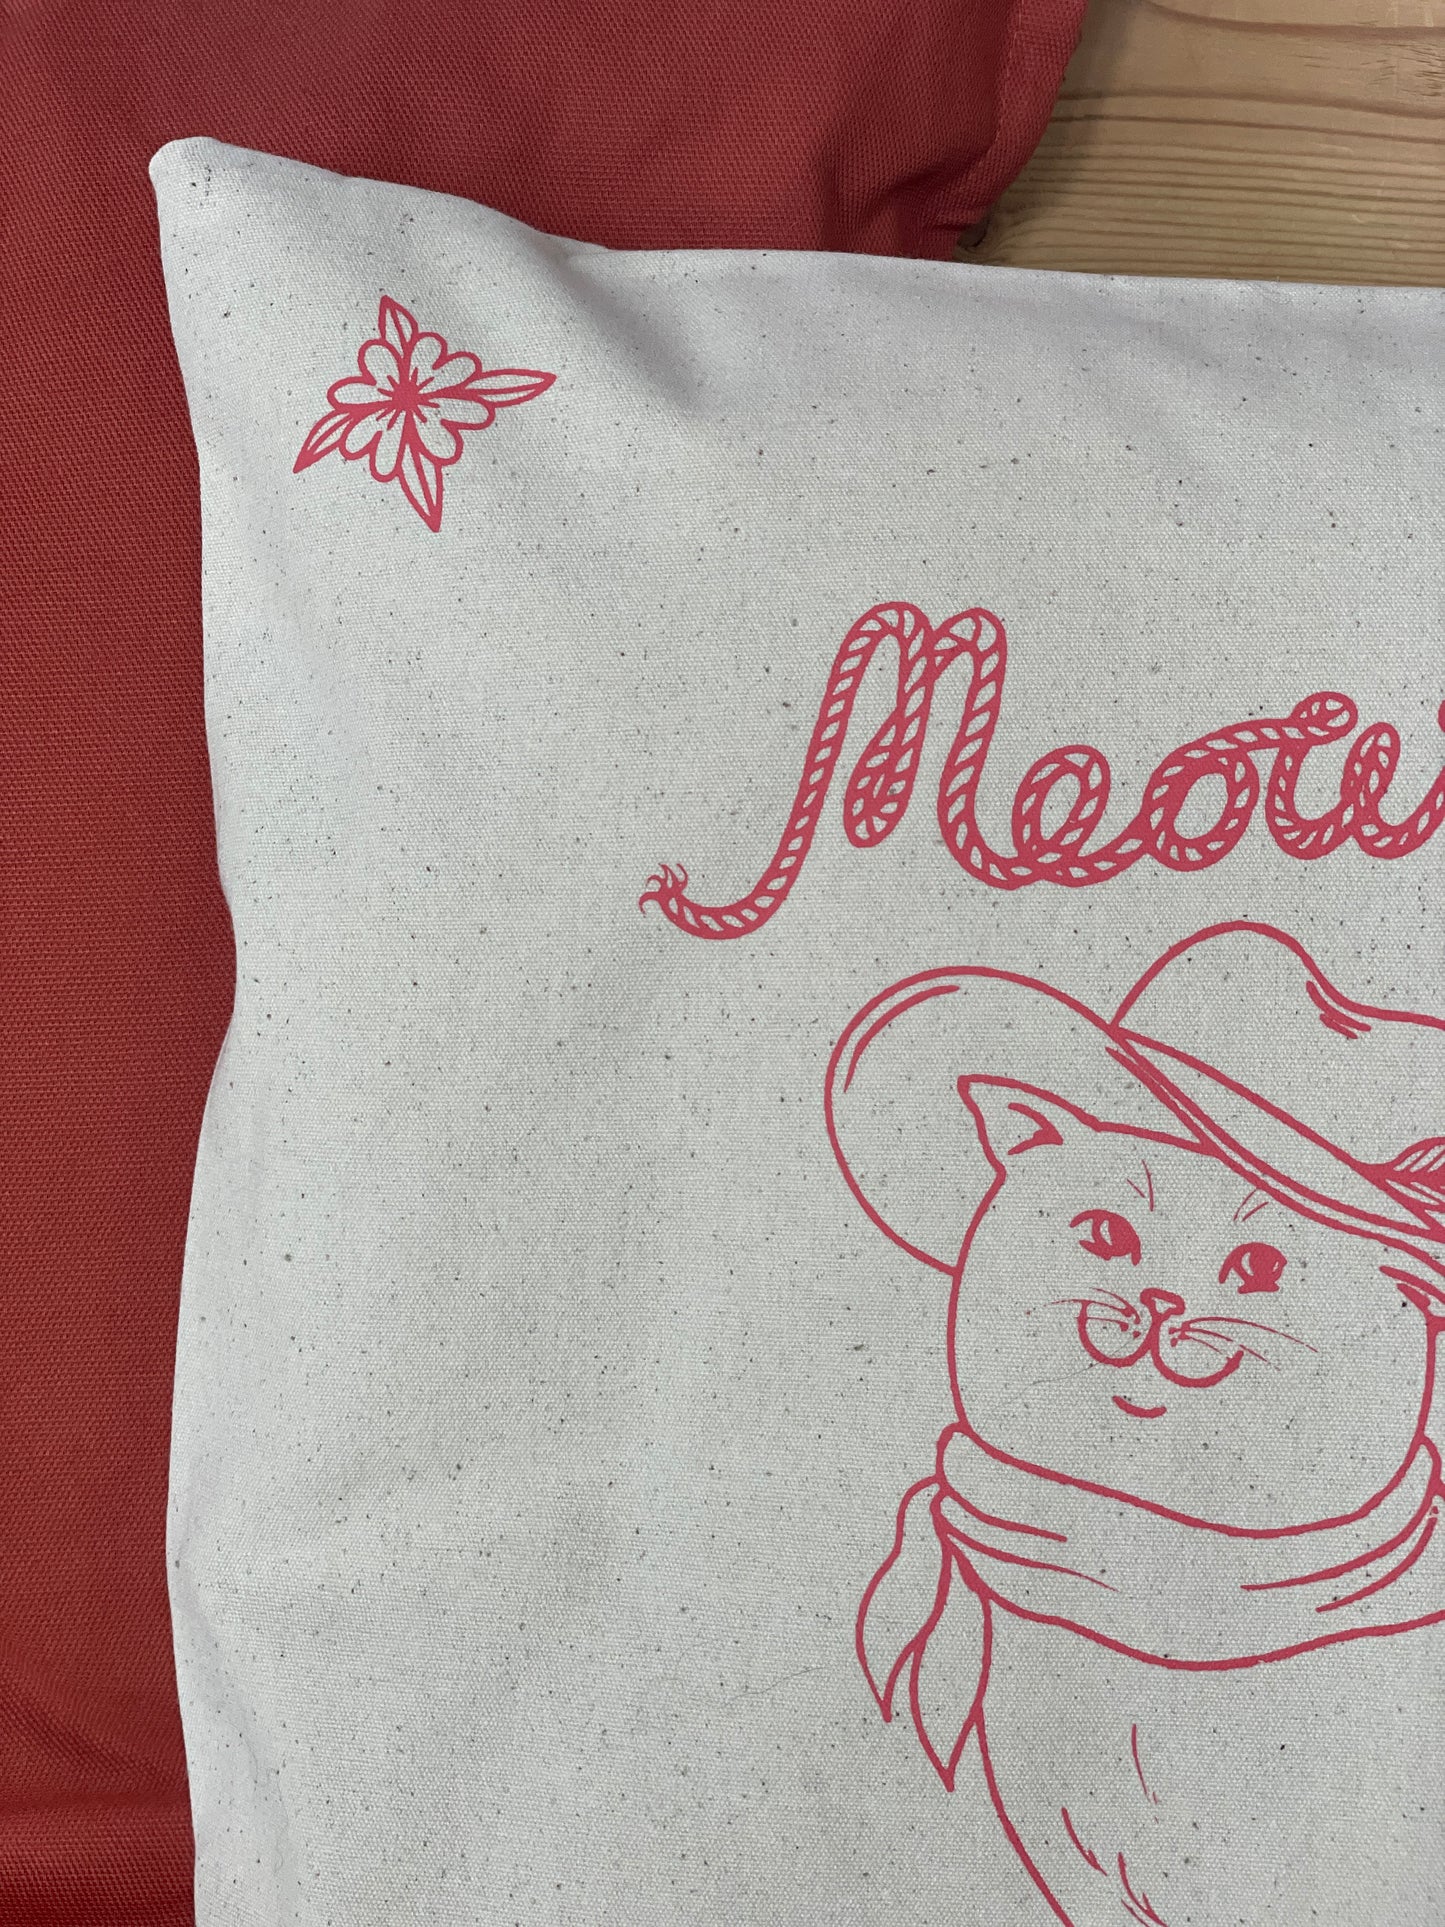 Meowdy cushion cover